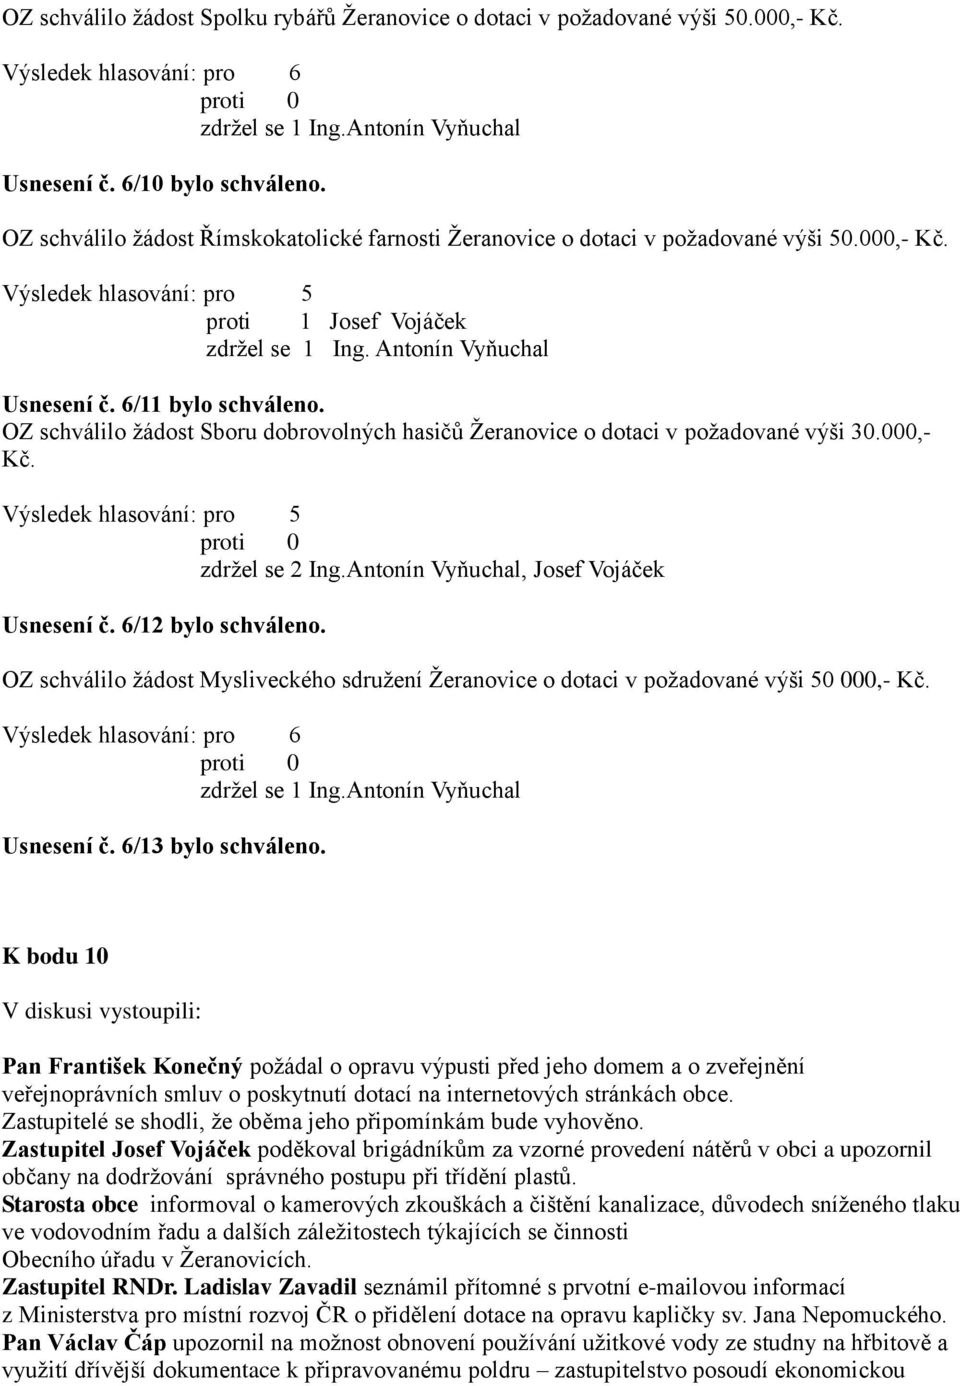 6/11 bylo schváleno. OZ schválilo žádost Sboru dobrovolných hasičů Žeranovice o dotaci v požadované výši 30.000,- Kč. Výsledek hlasování: pro 5 zdržel se 2 Ing.